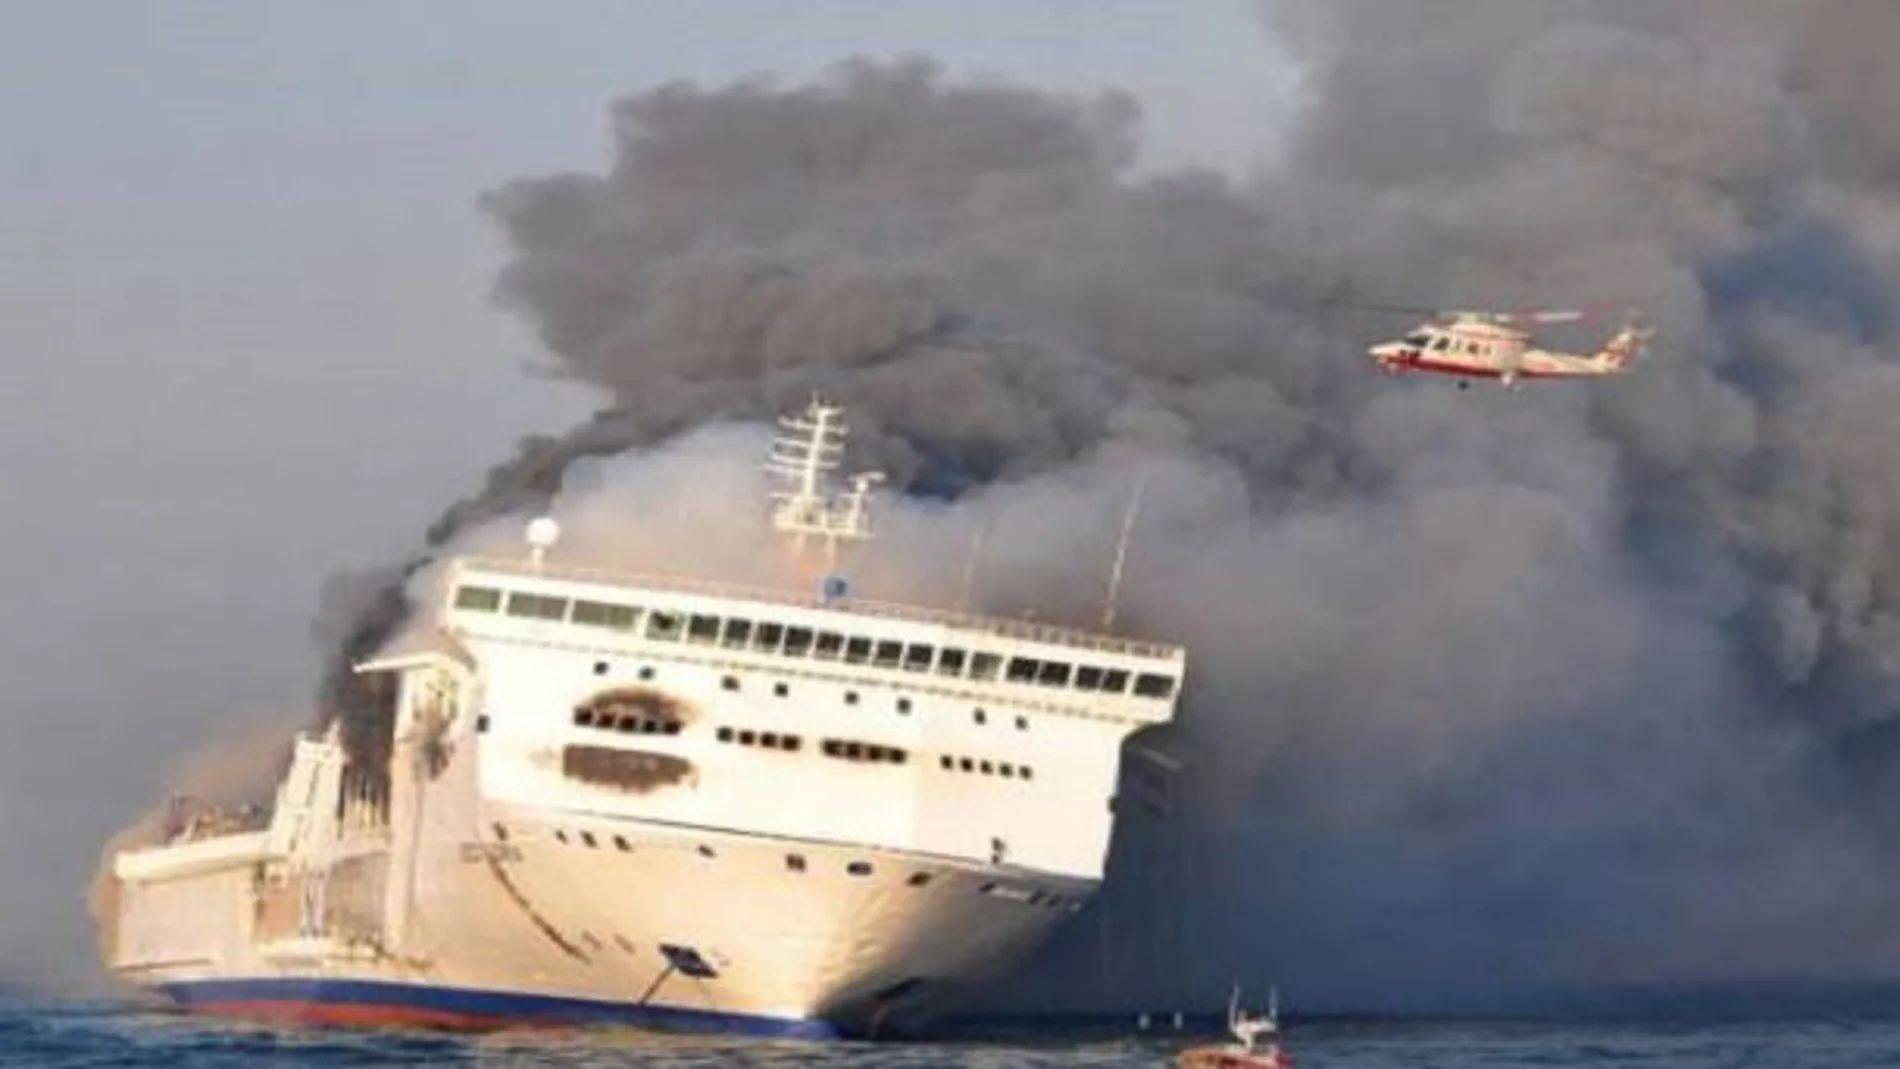 El ferry se ha incendiado tras producirse un explosión en la sala de motores/ Twitter